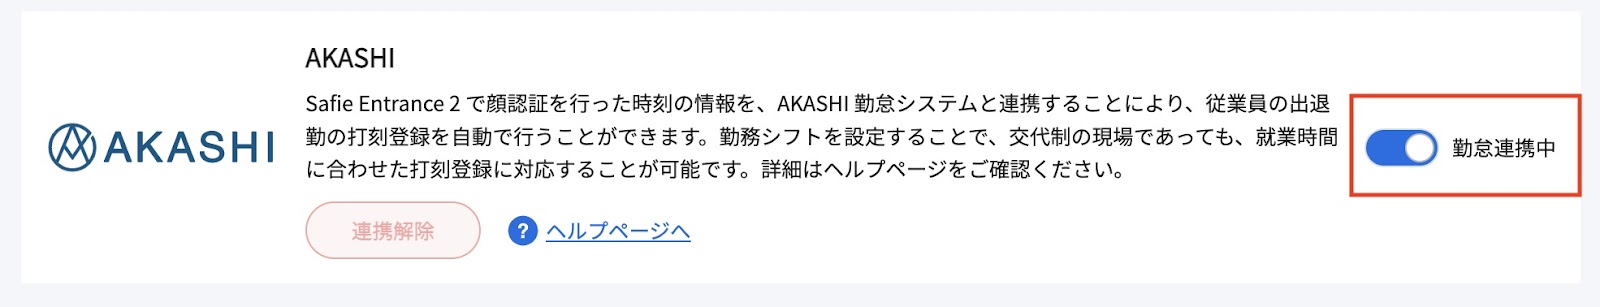 AKASHI-3.jpg